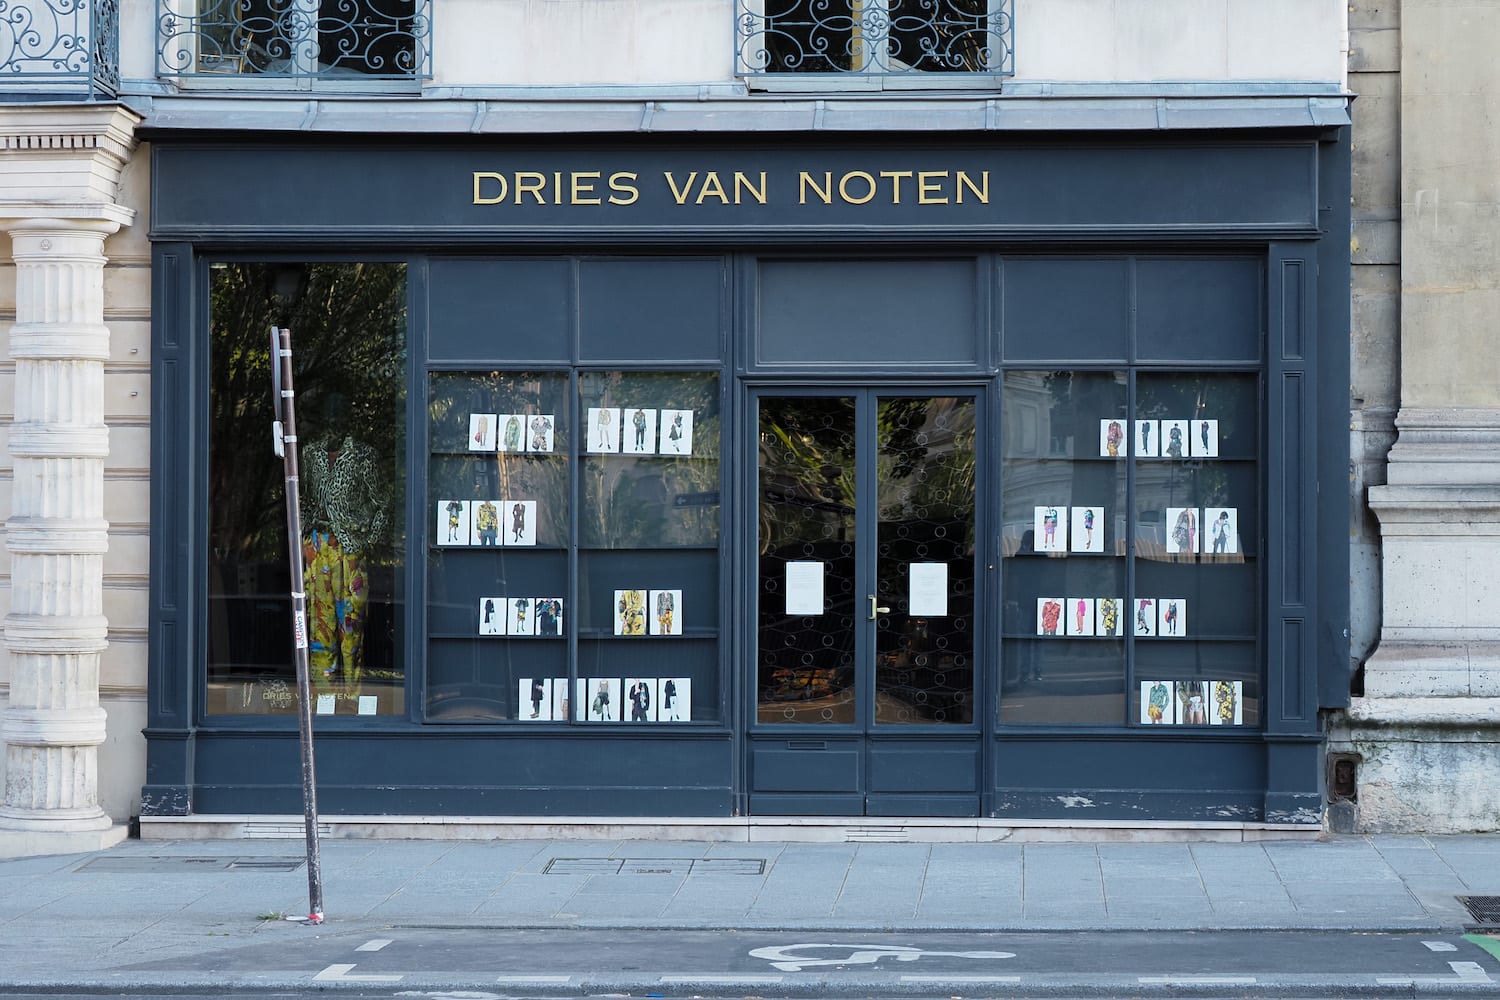 How to Pronounce Dries Van Noten